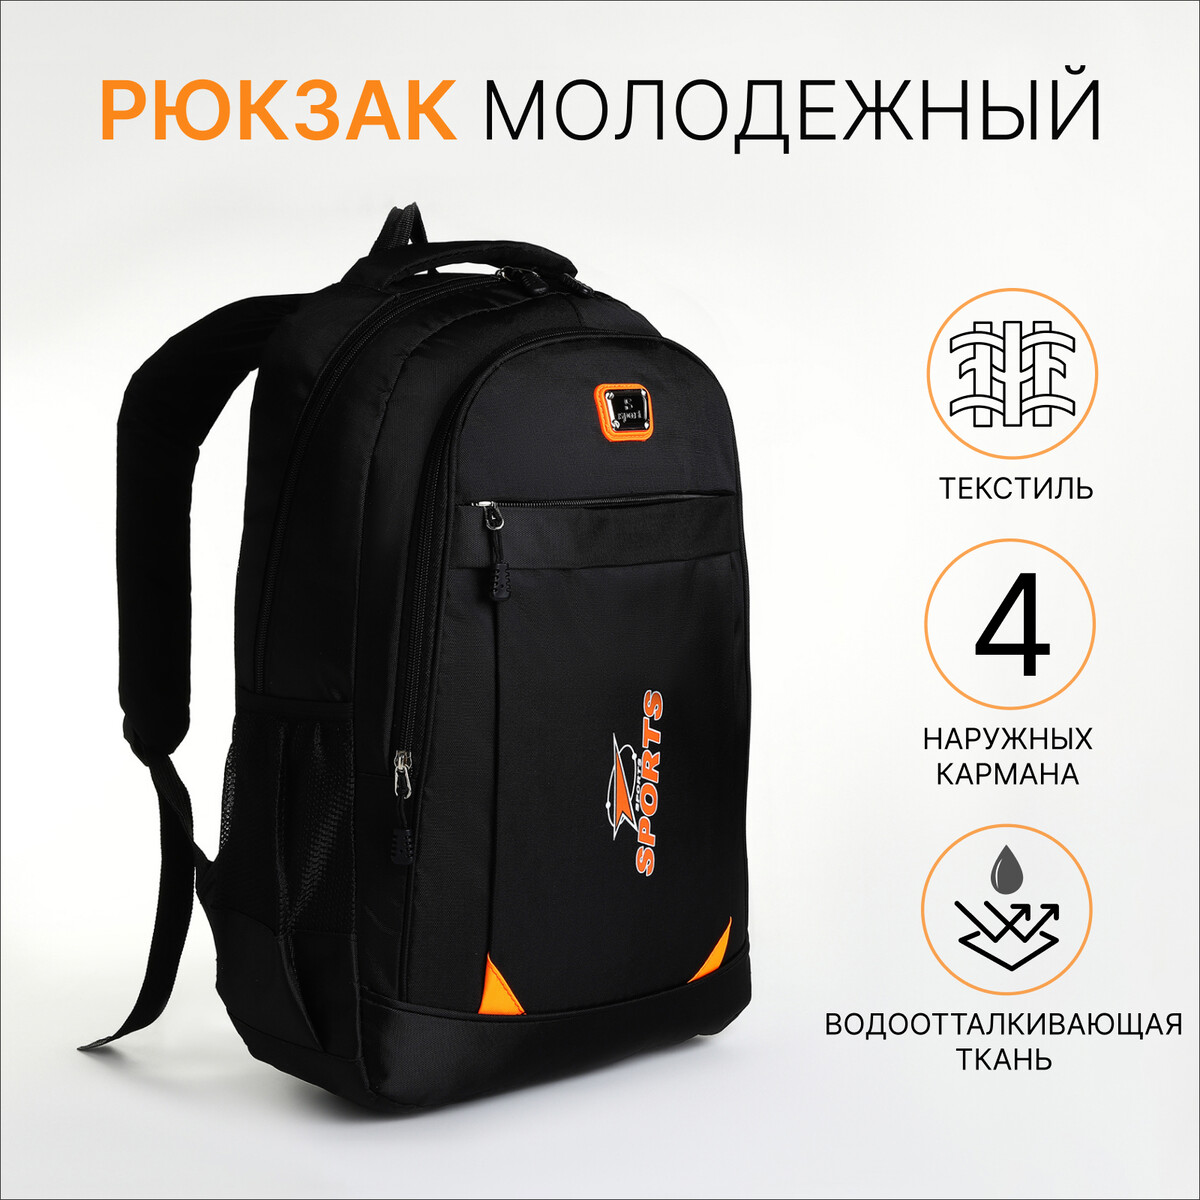 Рюкзак молодежный из текстиля на молнии, 4 кармана, цвет черный/оранжевый рюкзак молодежный из текстиля на молнии 4 кармана оранжевый